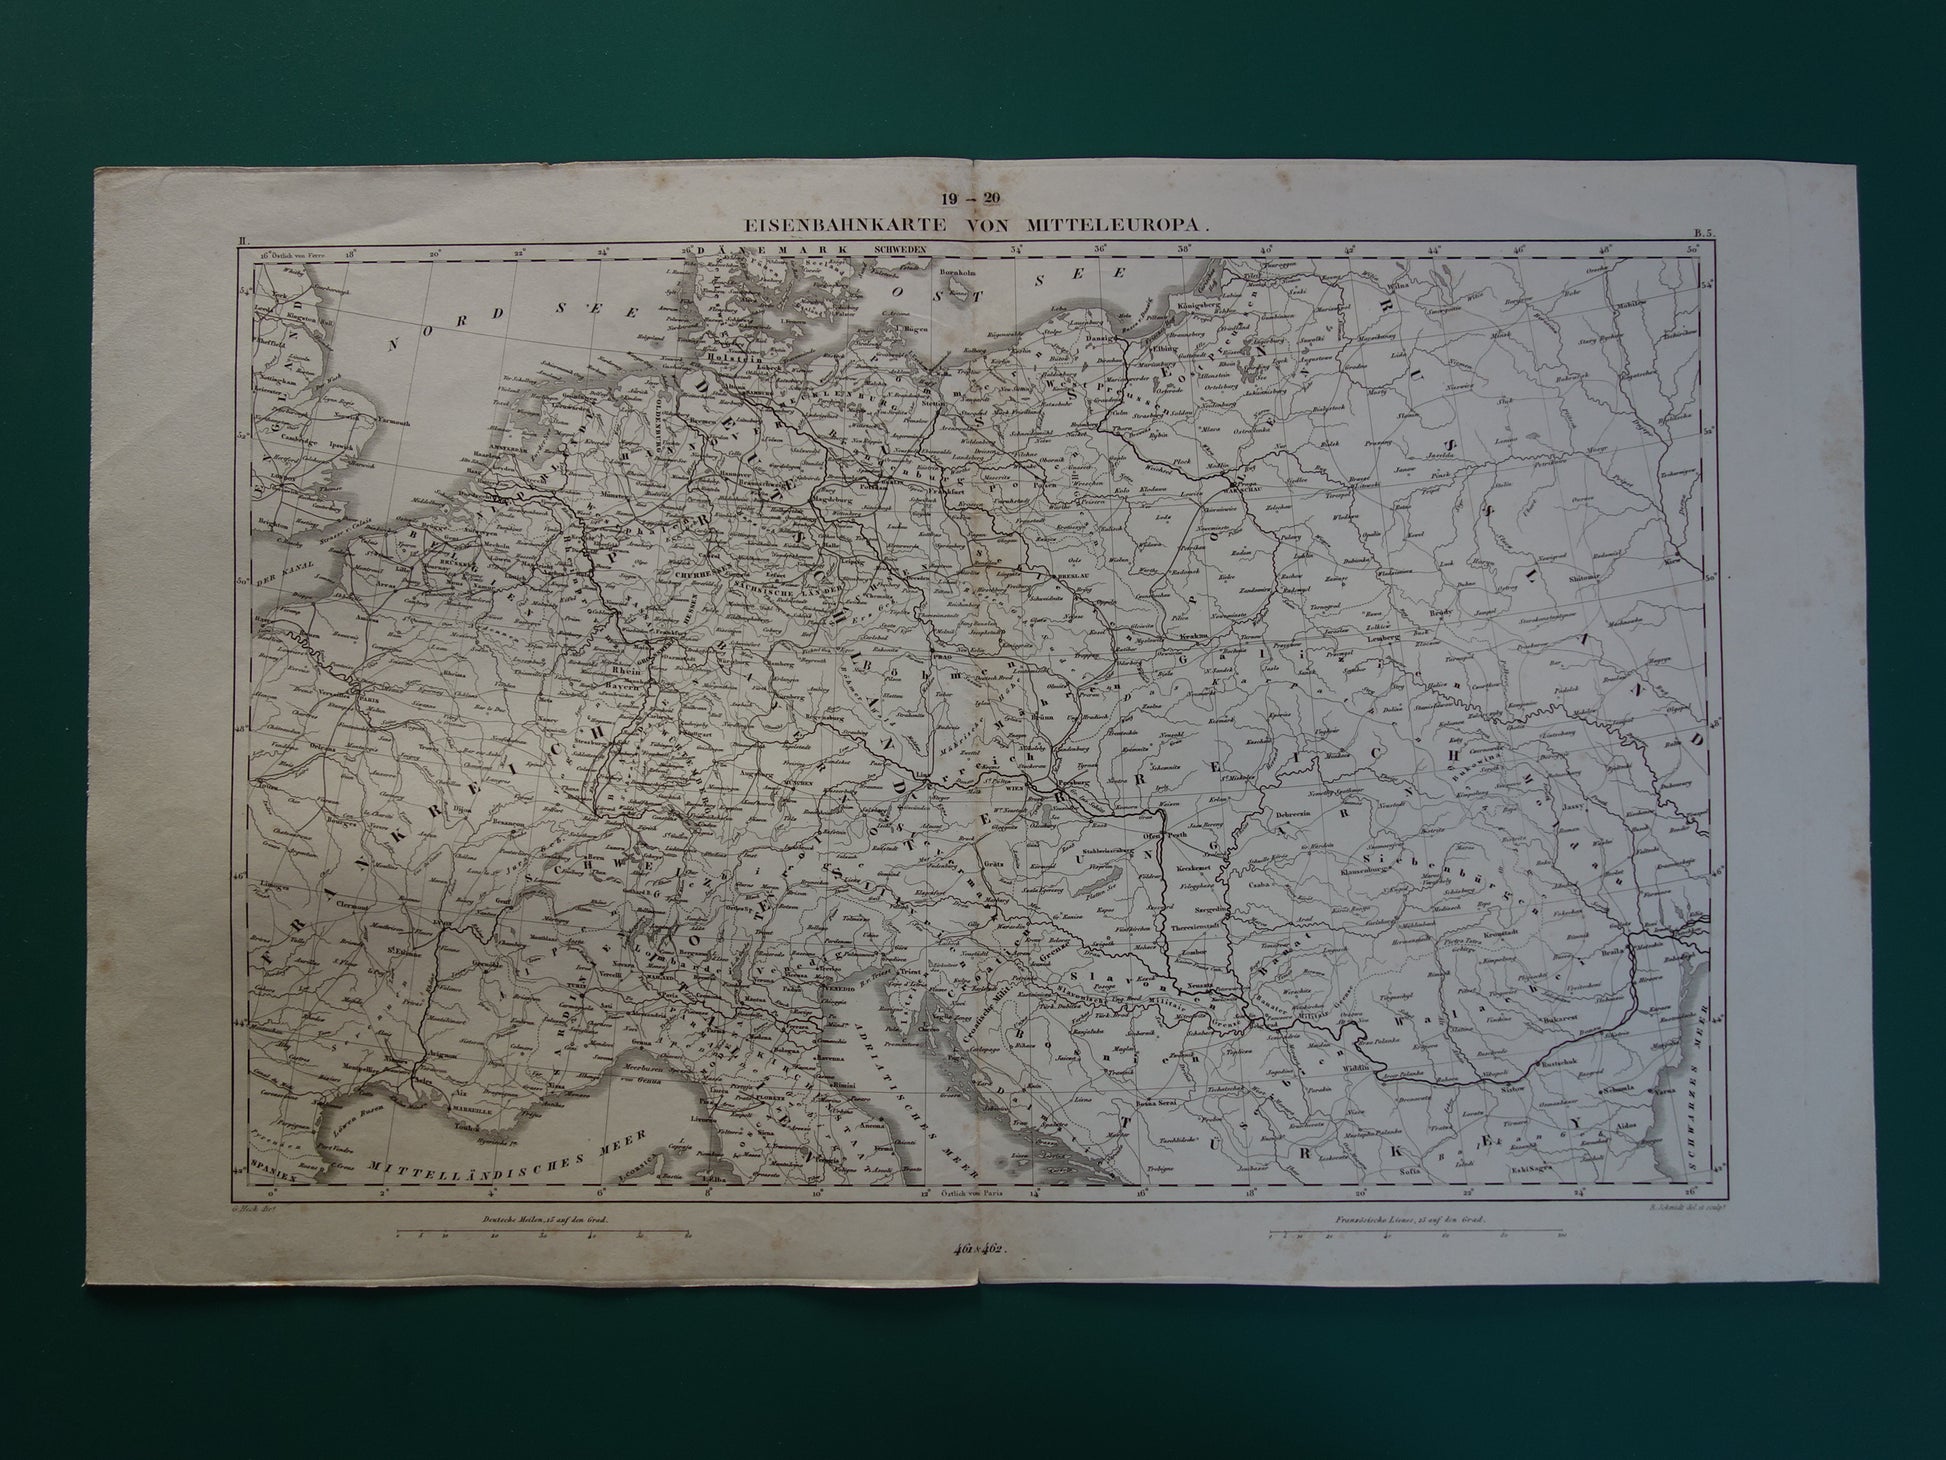 Antieke kaart van Spoorwegen in Nederland Duitsland originele 170+ jaar oude landkaart spoorlijnen centraal Europa spoorkaart